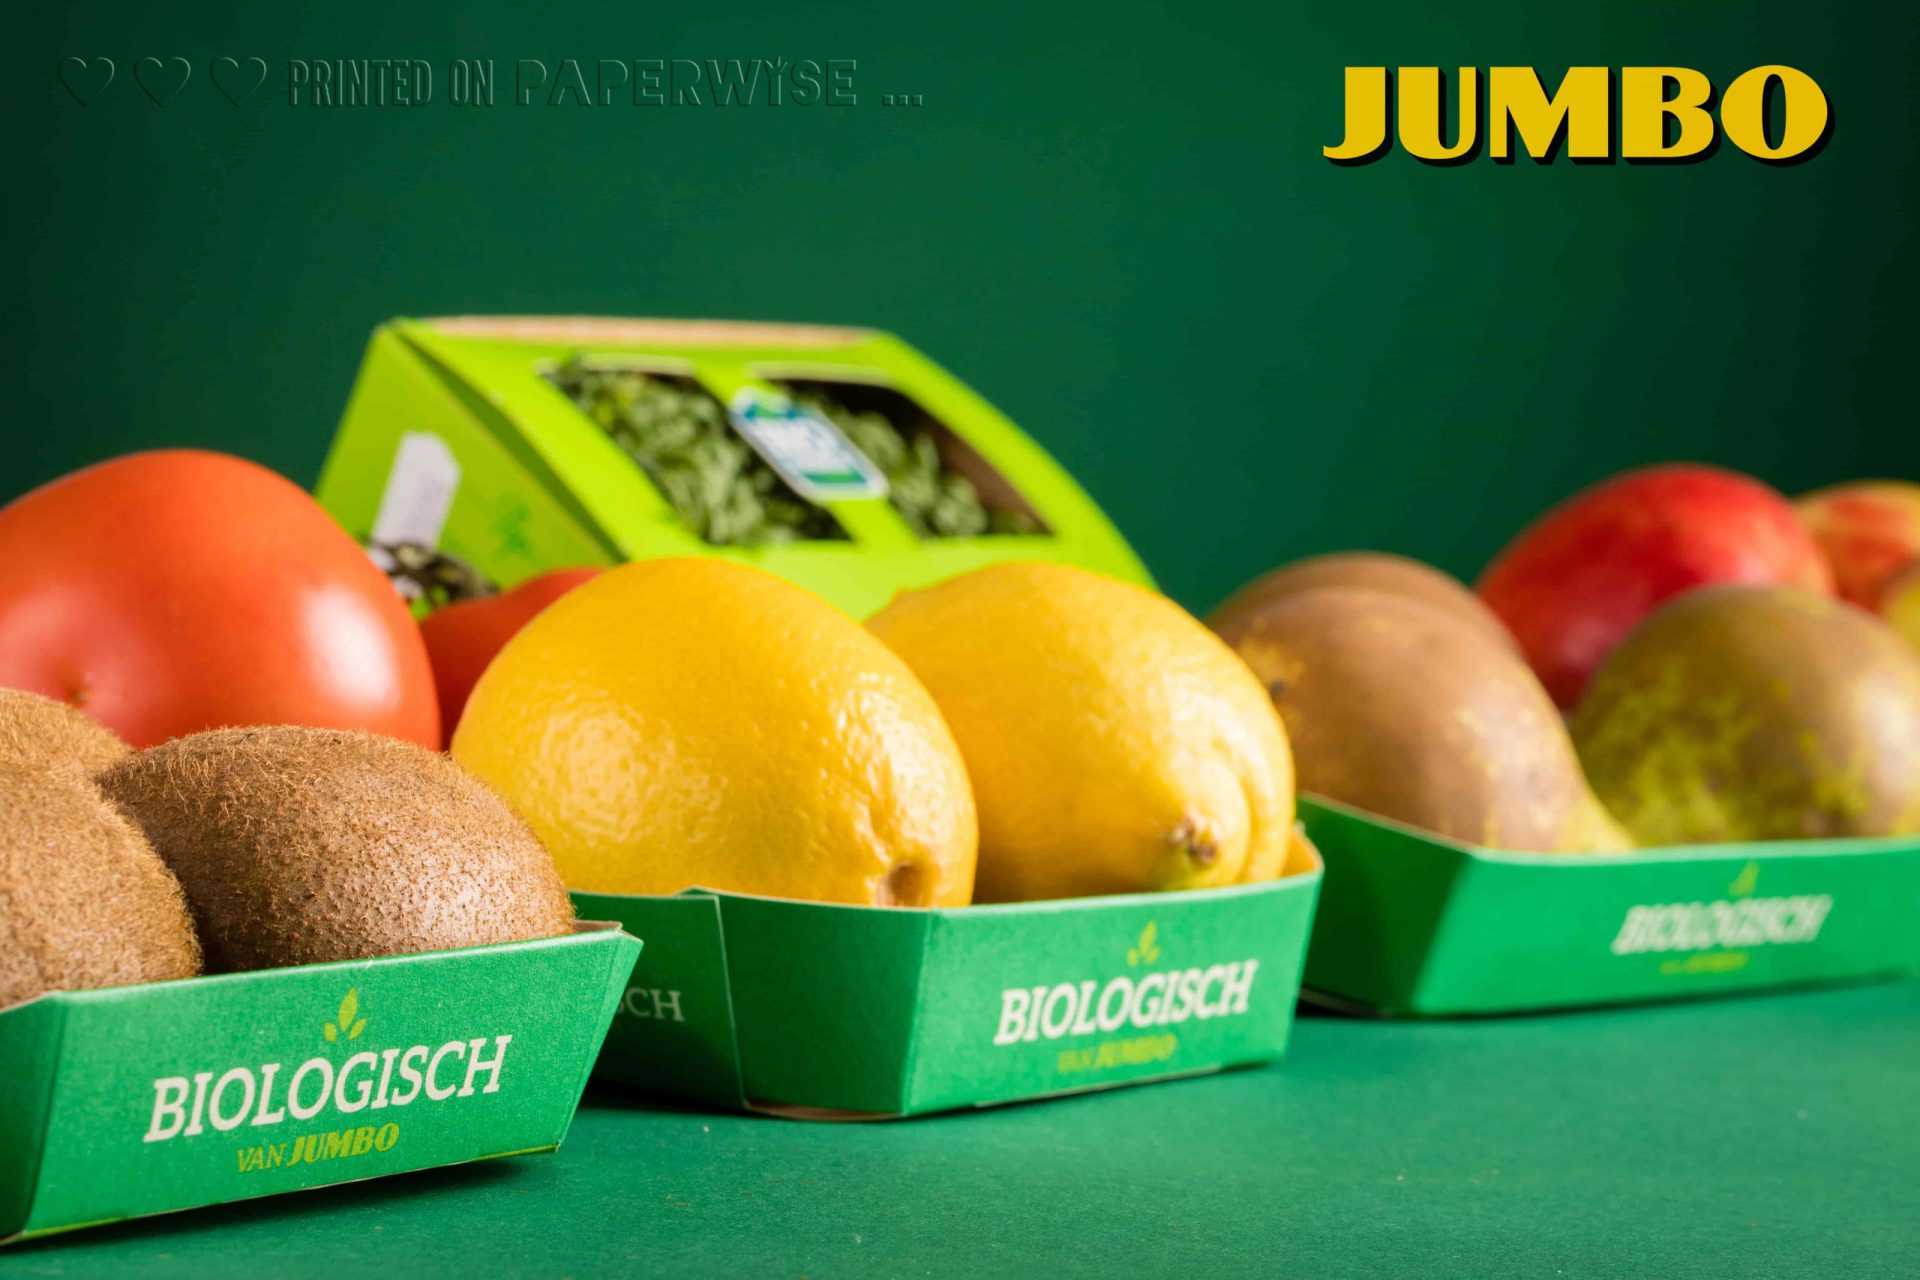 PaperWise packaging fruit & vegetable Jumbo